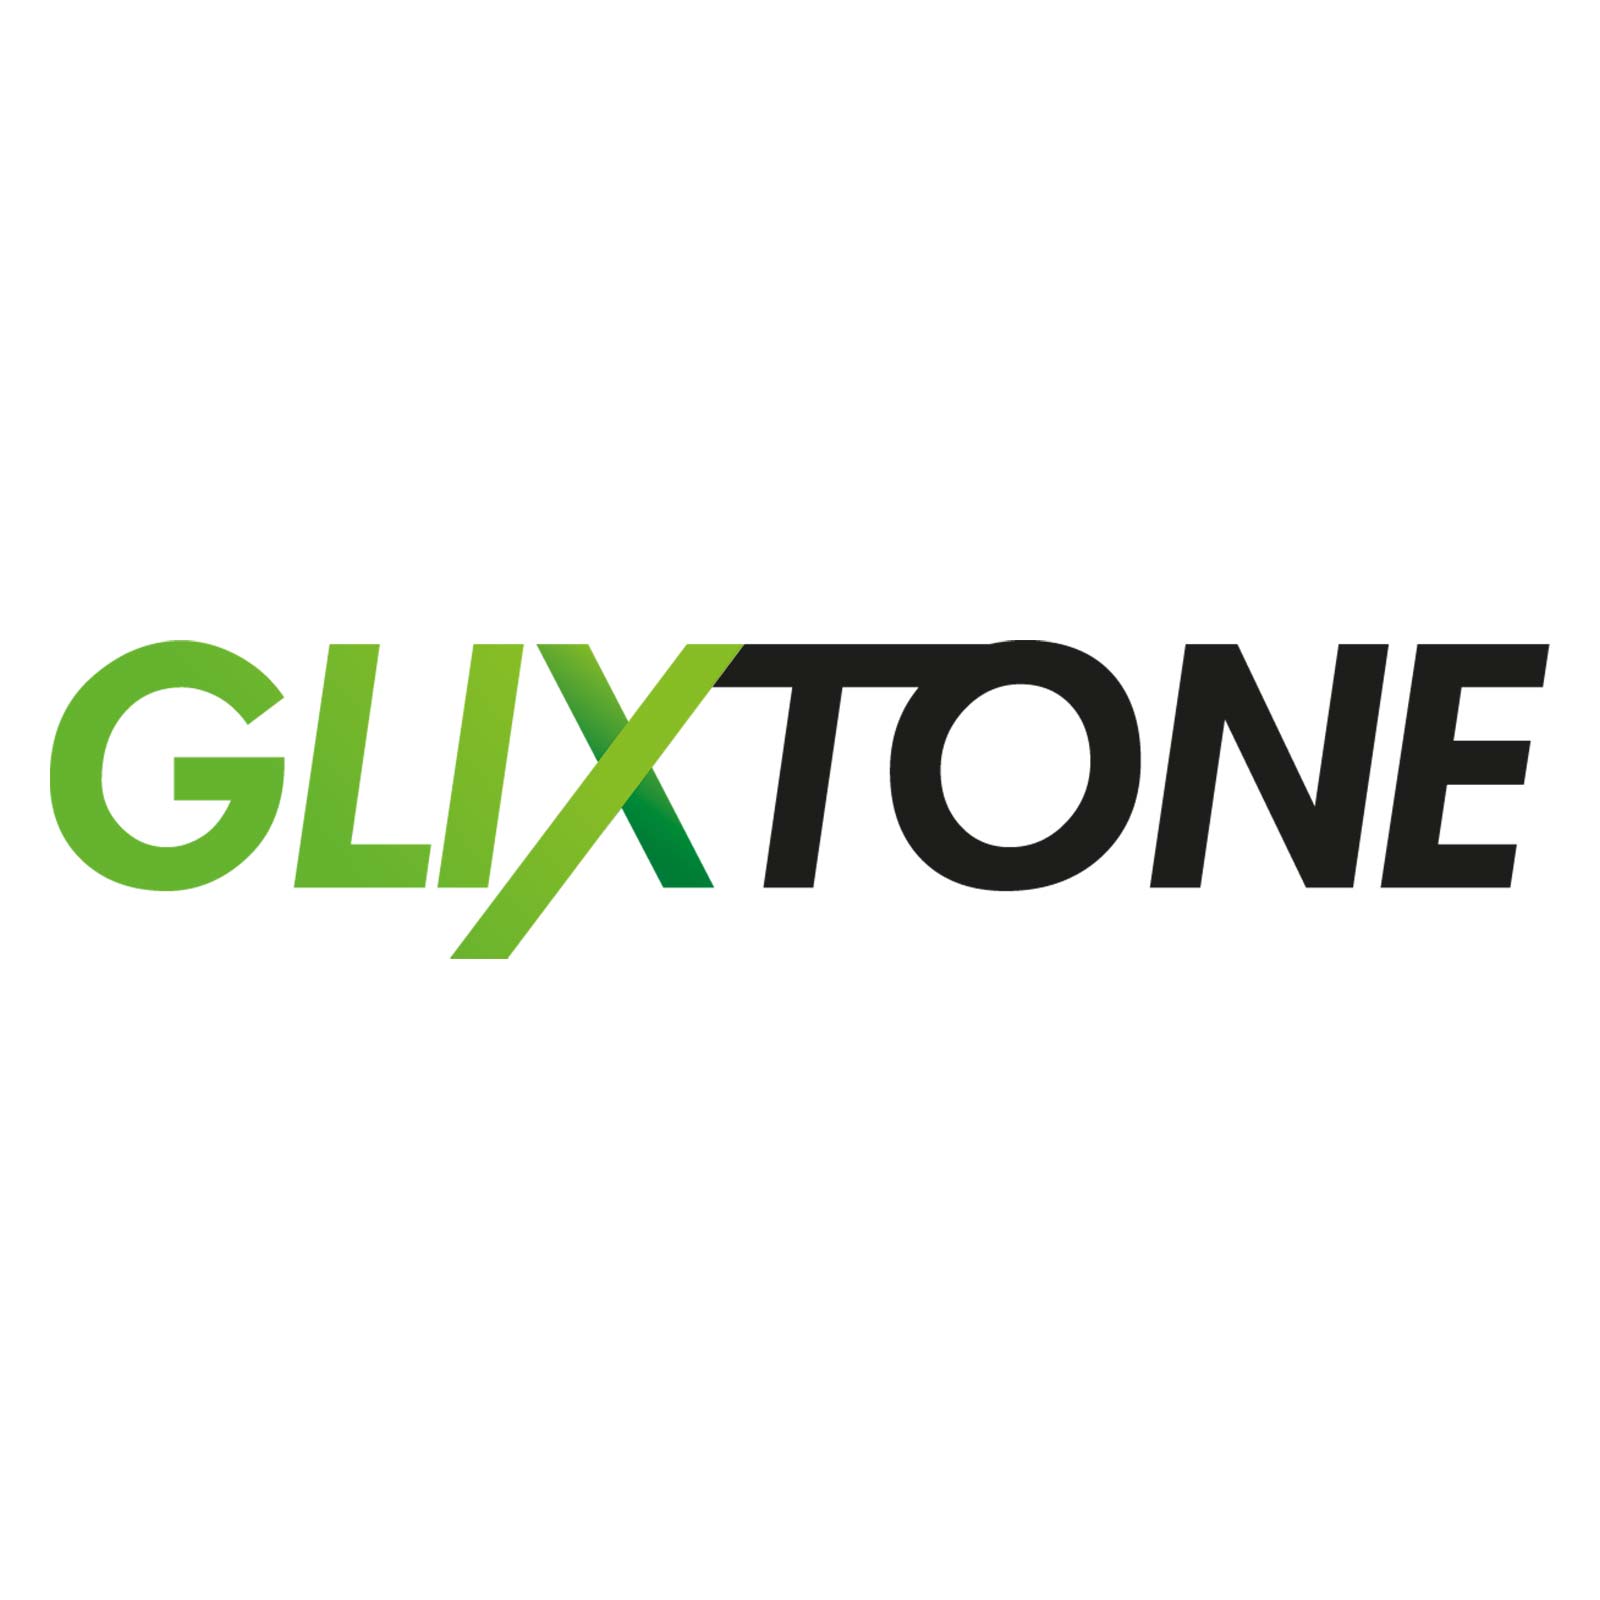 Glixtone